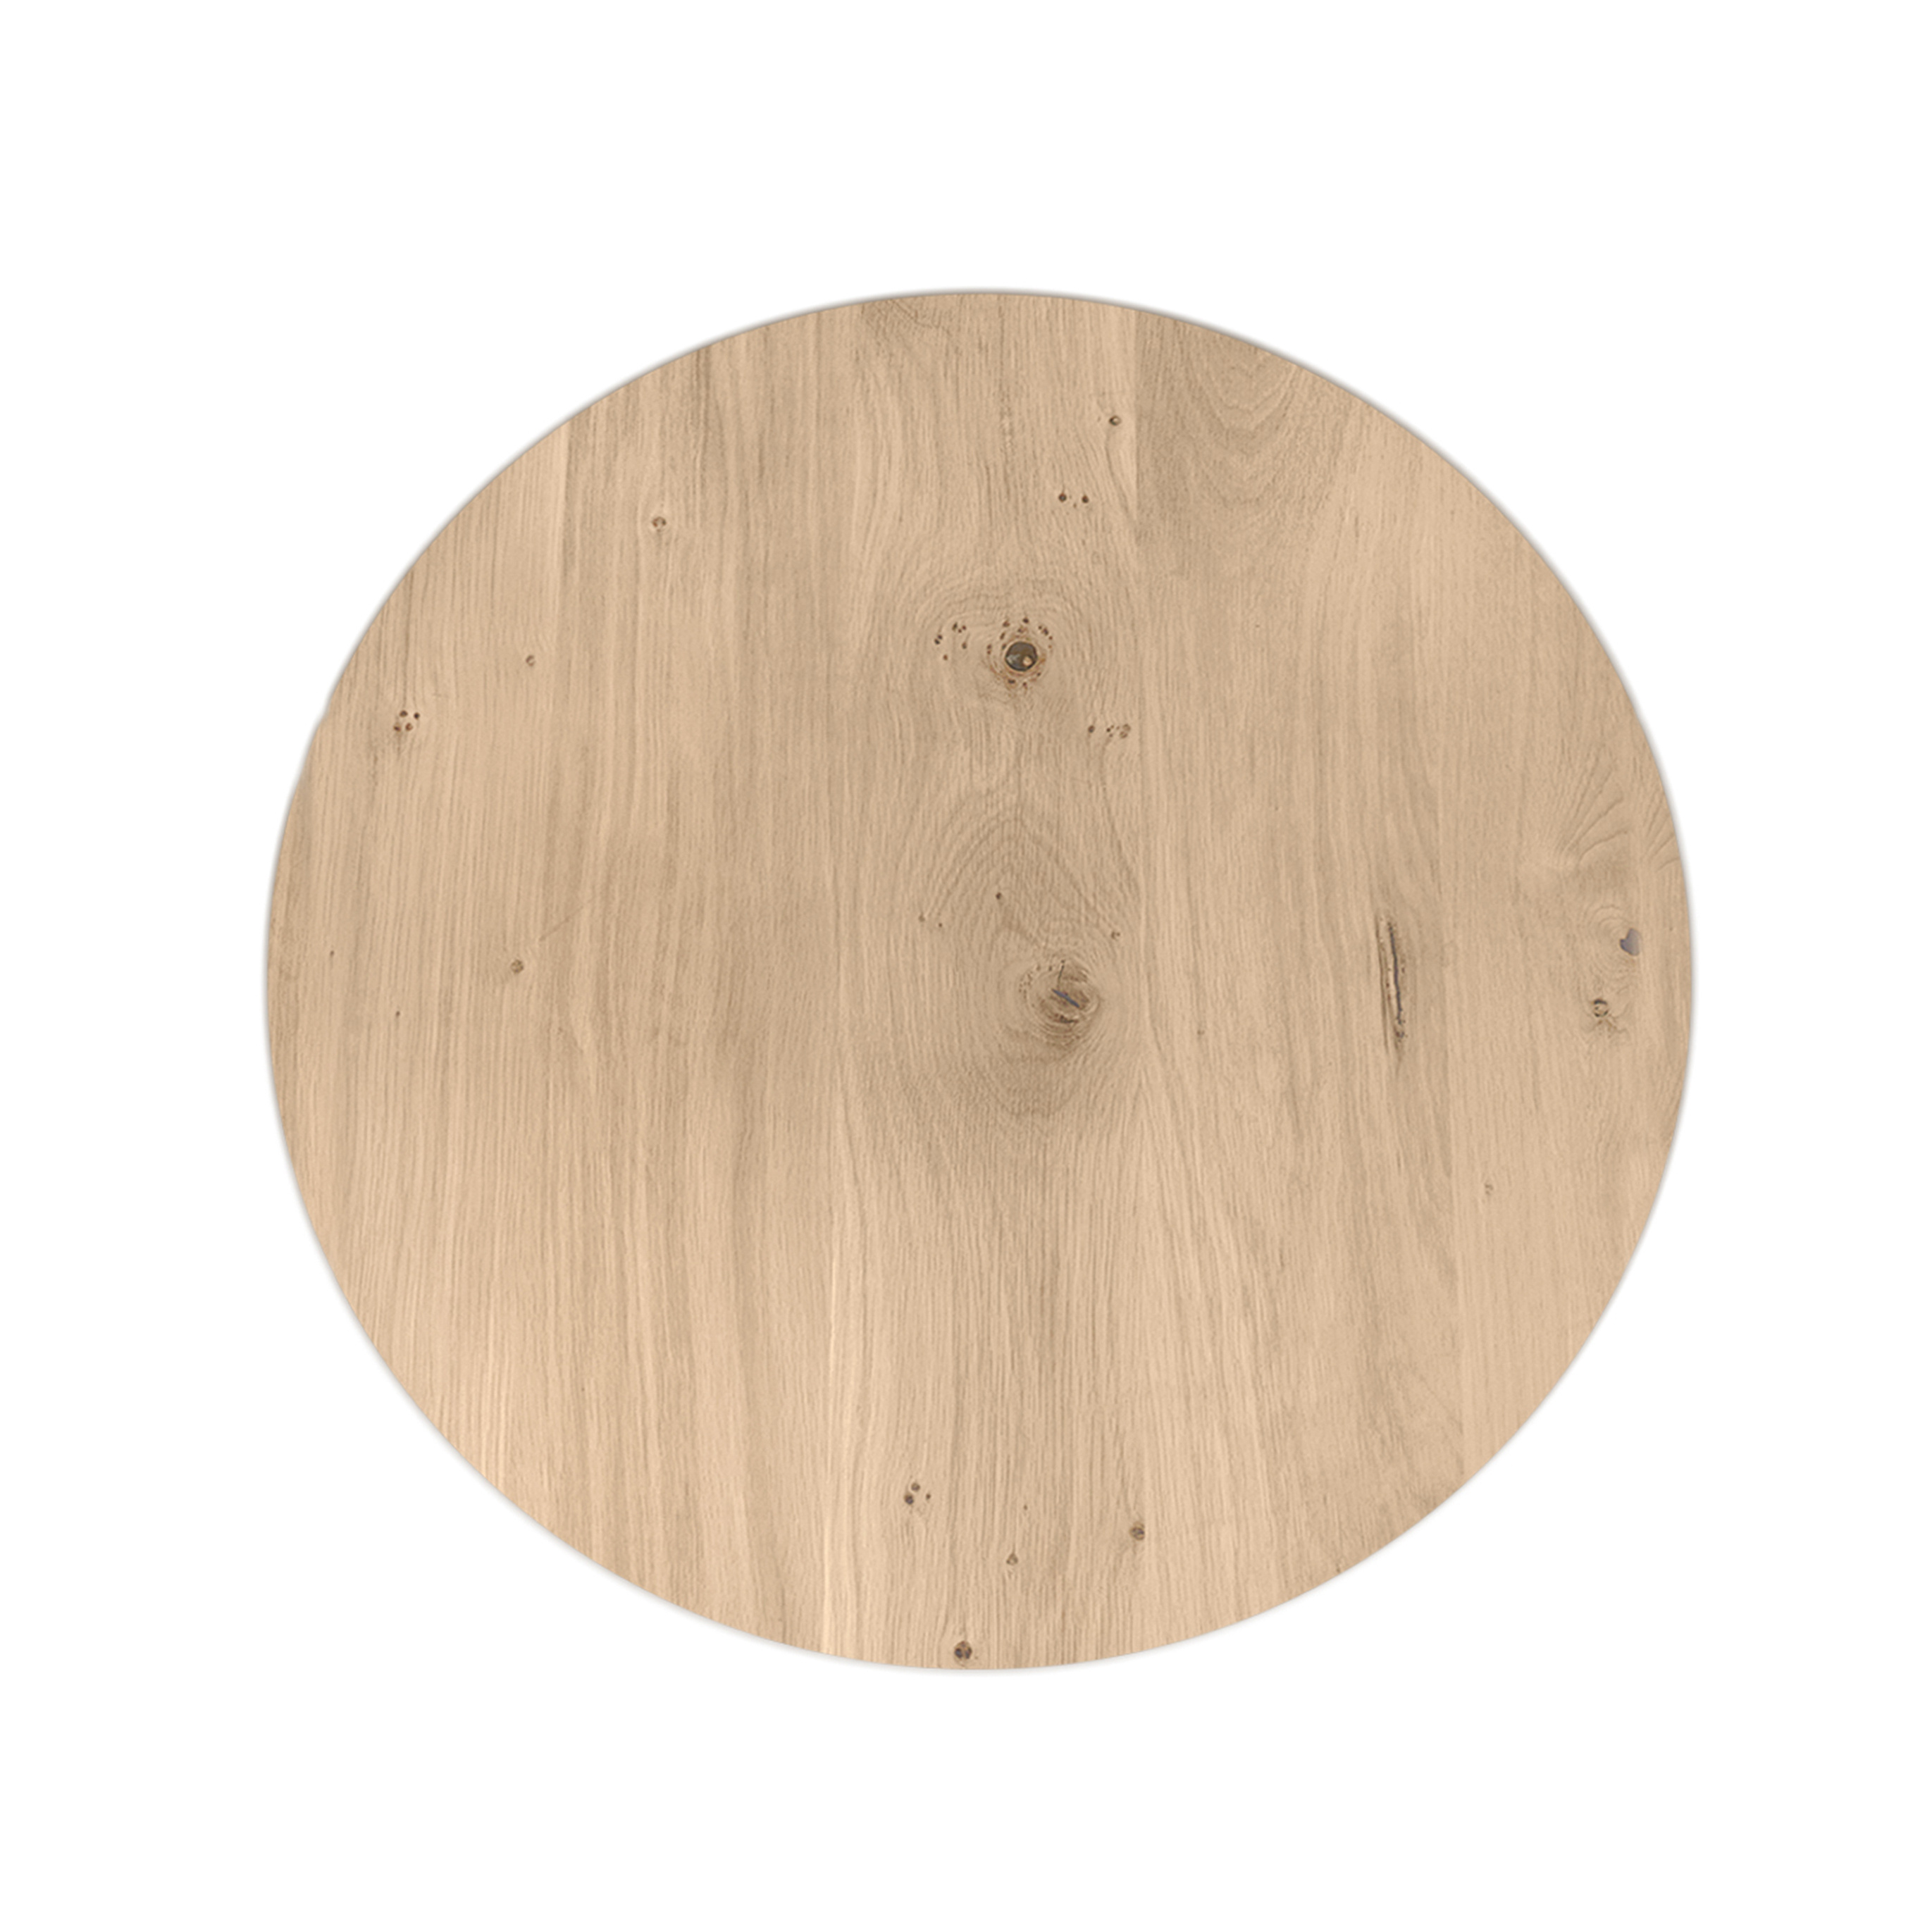  Tischplatte Wildeiche rund - 2,5 cm dick (1-Schicht) - XXL Lamellen (14-20 cm breit) - Asteiche (rustikal) - verleimt & künstlich getrocknet (HF 8-12%) - verschiedene Größen